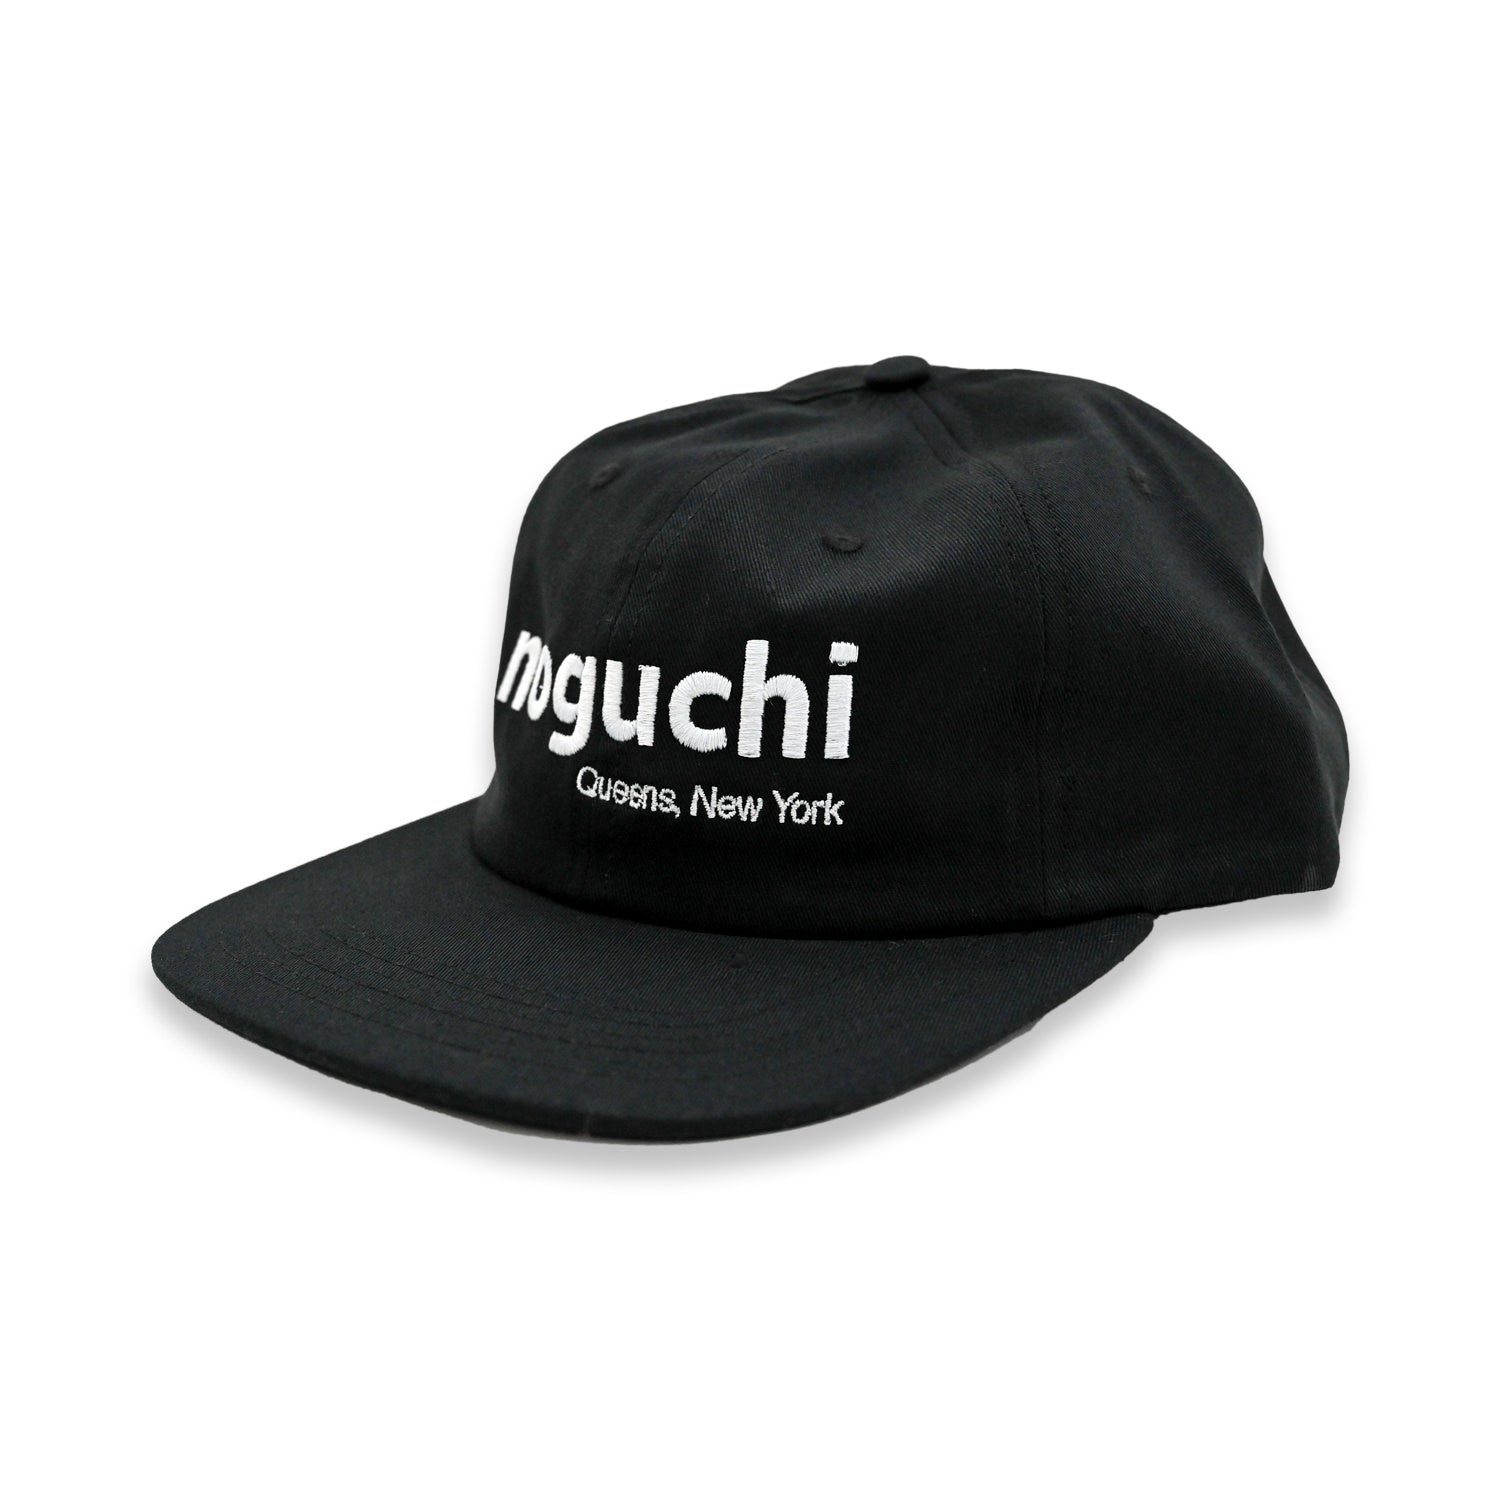 noguchi cap by Marcel Peña slon キャップ